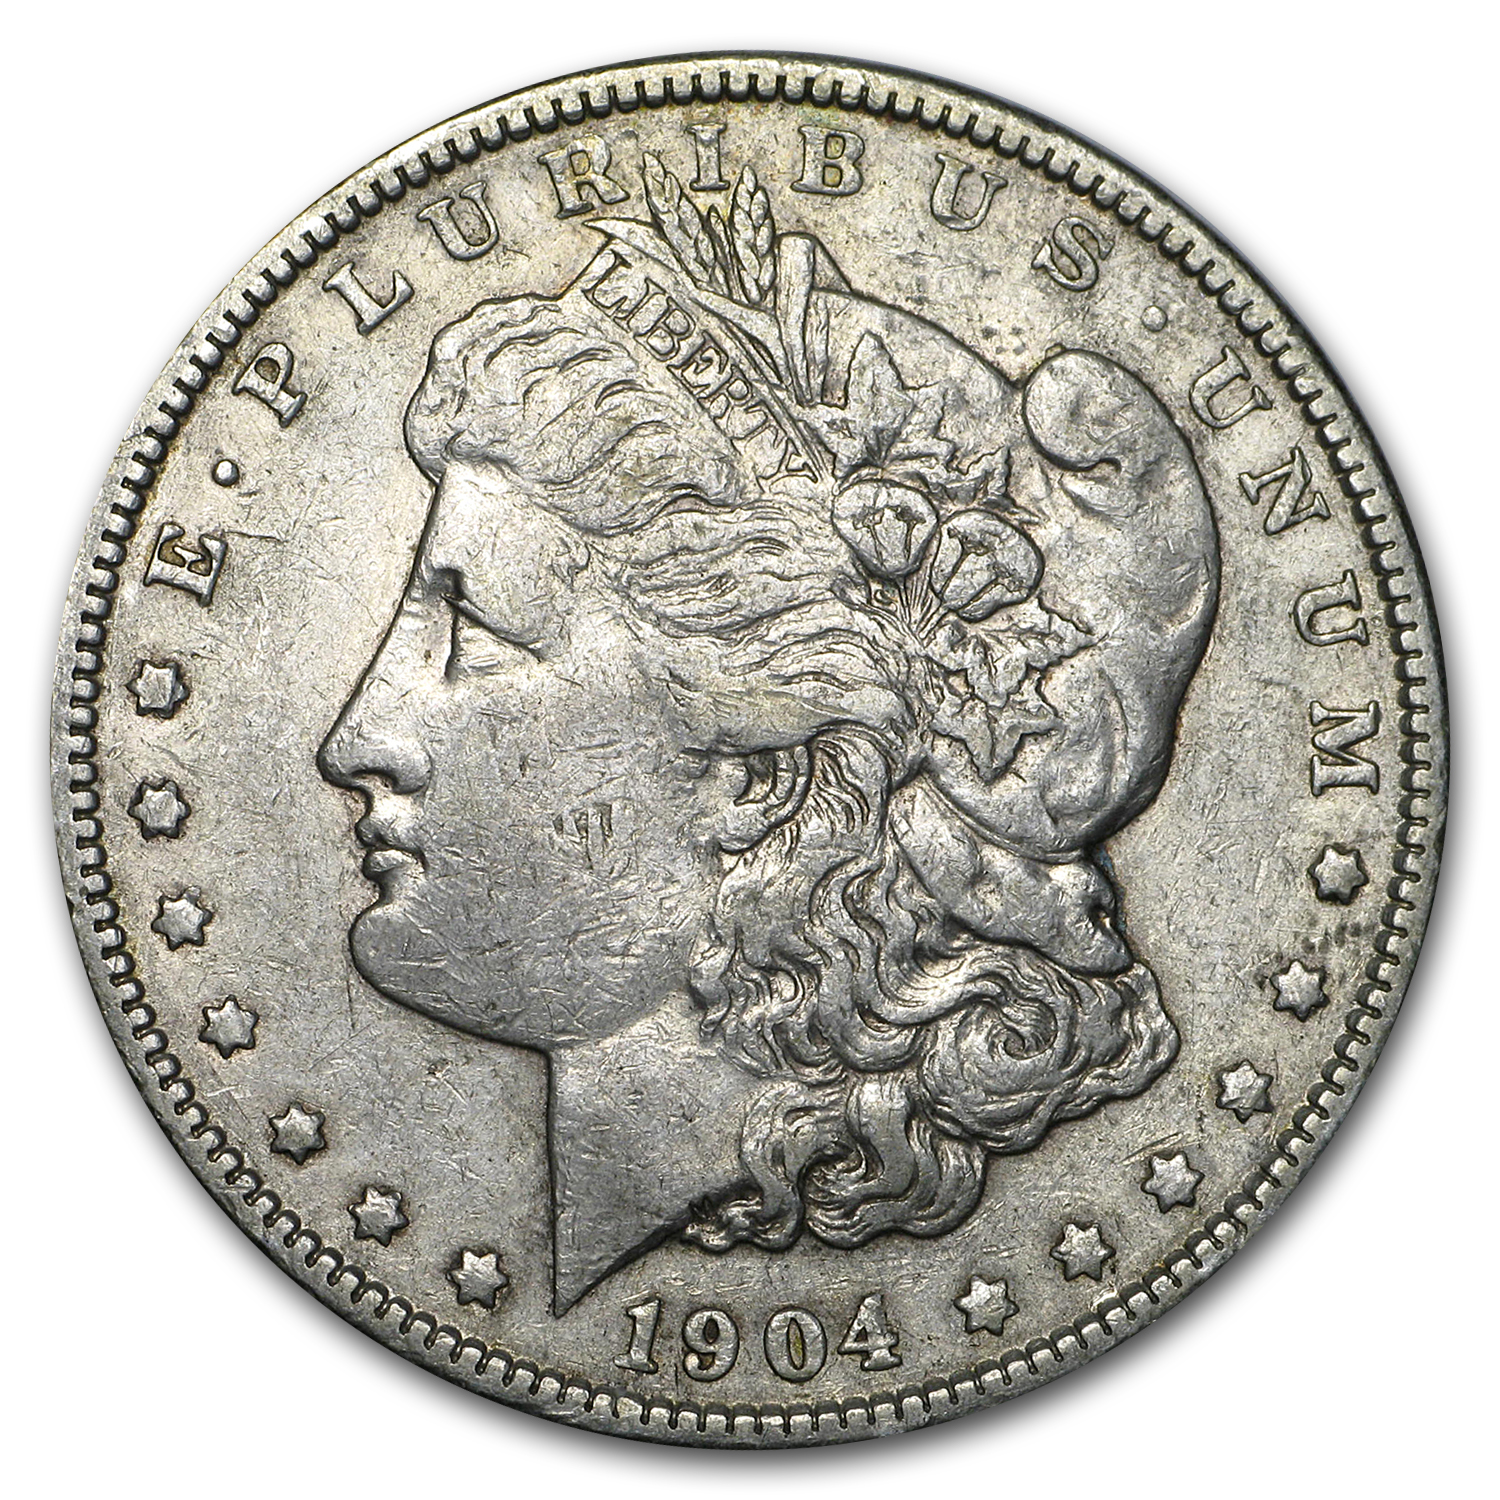 Buy 1904 Morgan Dollar XF